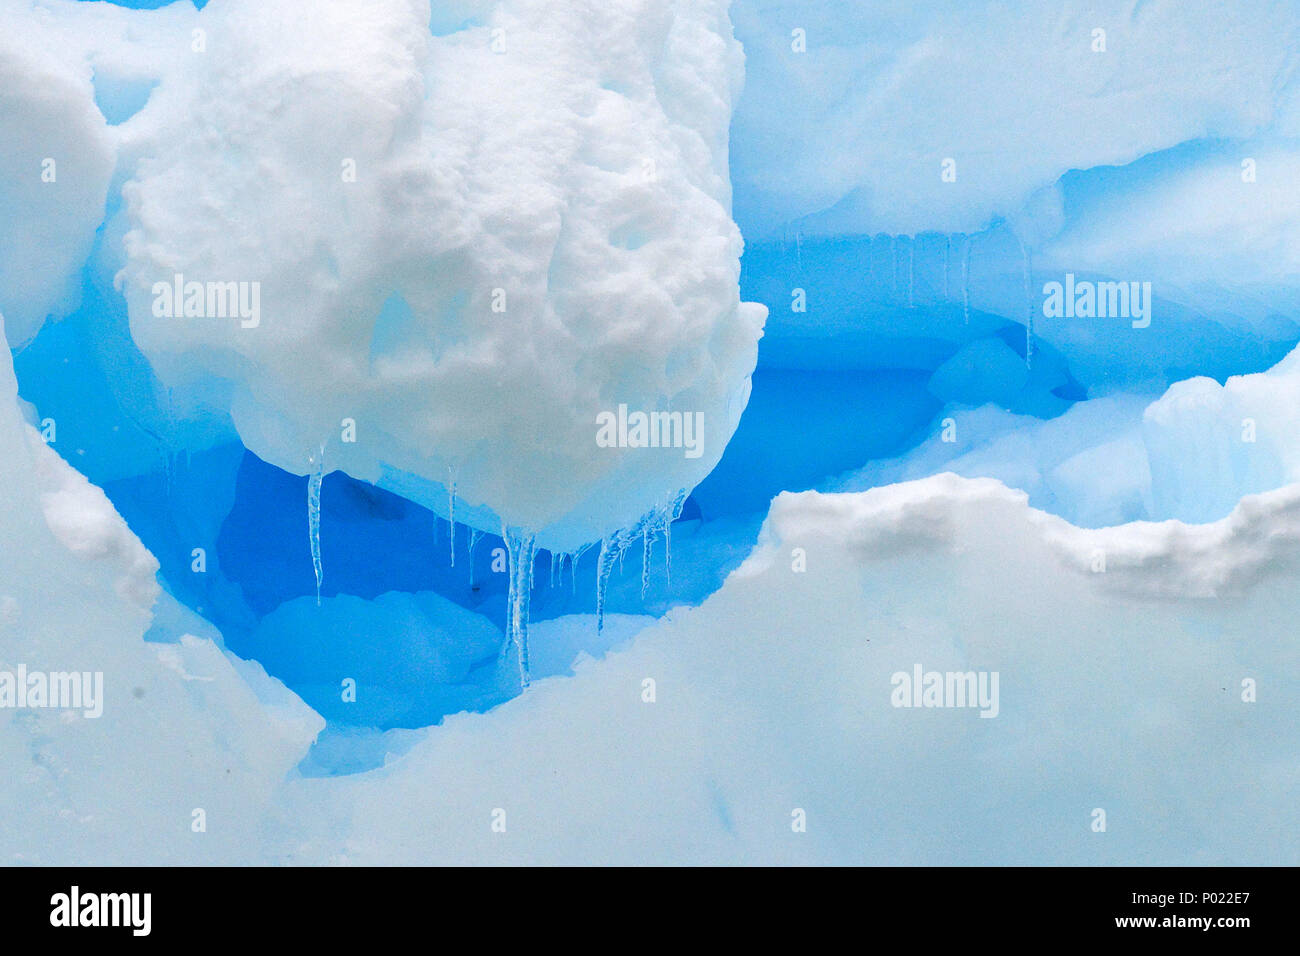 Schmelzendes Eis in der Charlotte Bay, Danco-Kueste, Grahamland. Antarktis | Melting ice at Charlotte Bay, Danco coast, Grahamland. Antarctica Stock Photo